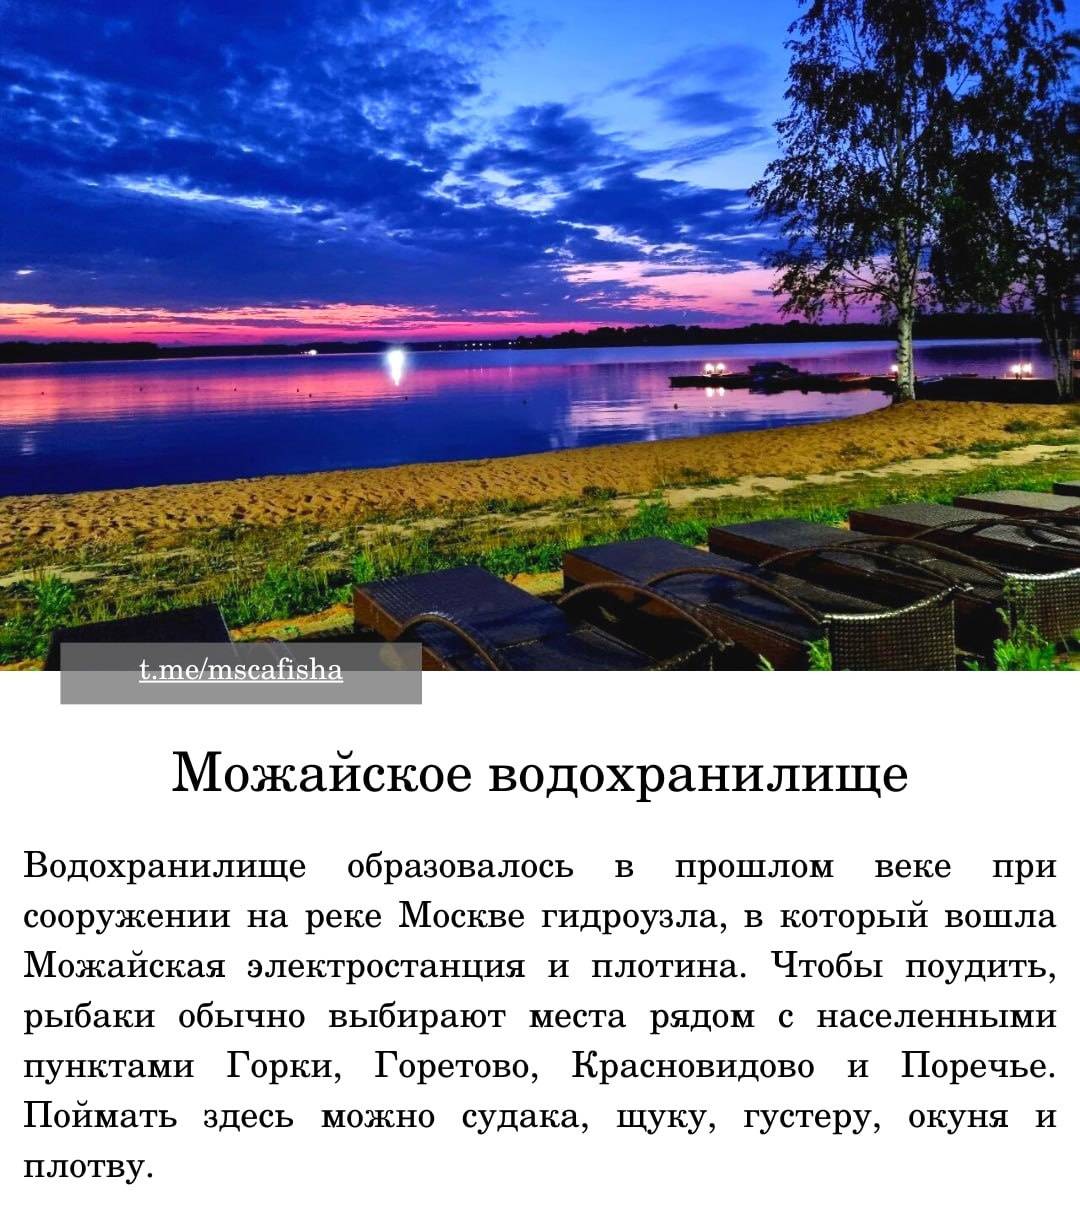 Платная рыбалка и рыболовные туры в иркутской области